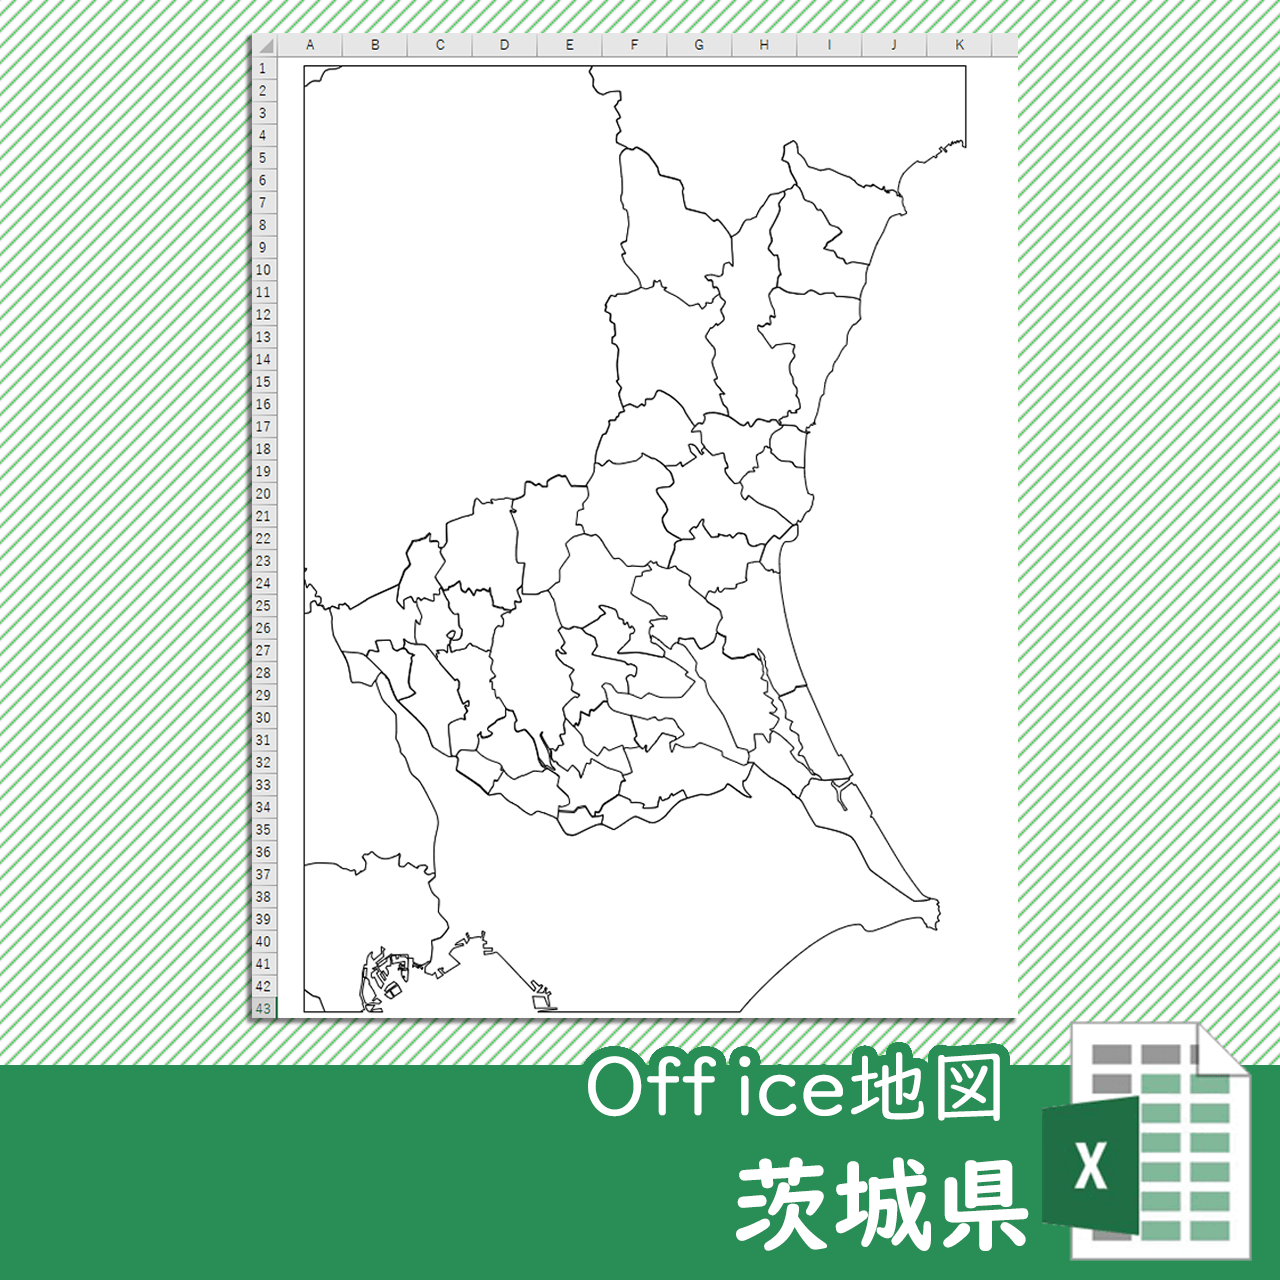 茨城県のOffice地図のサムネイル